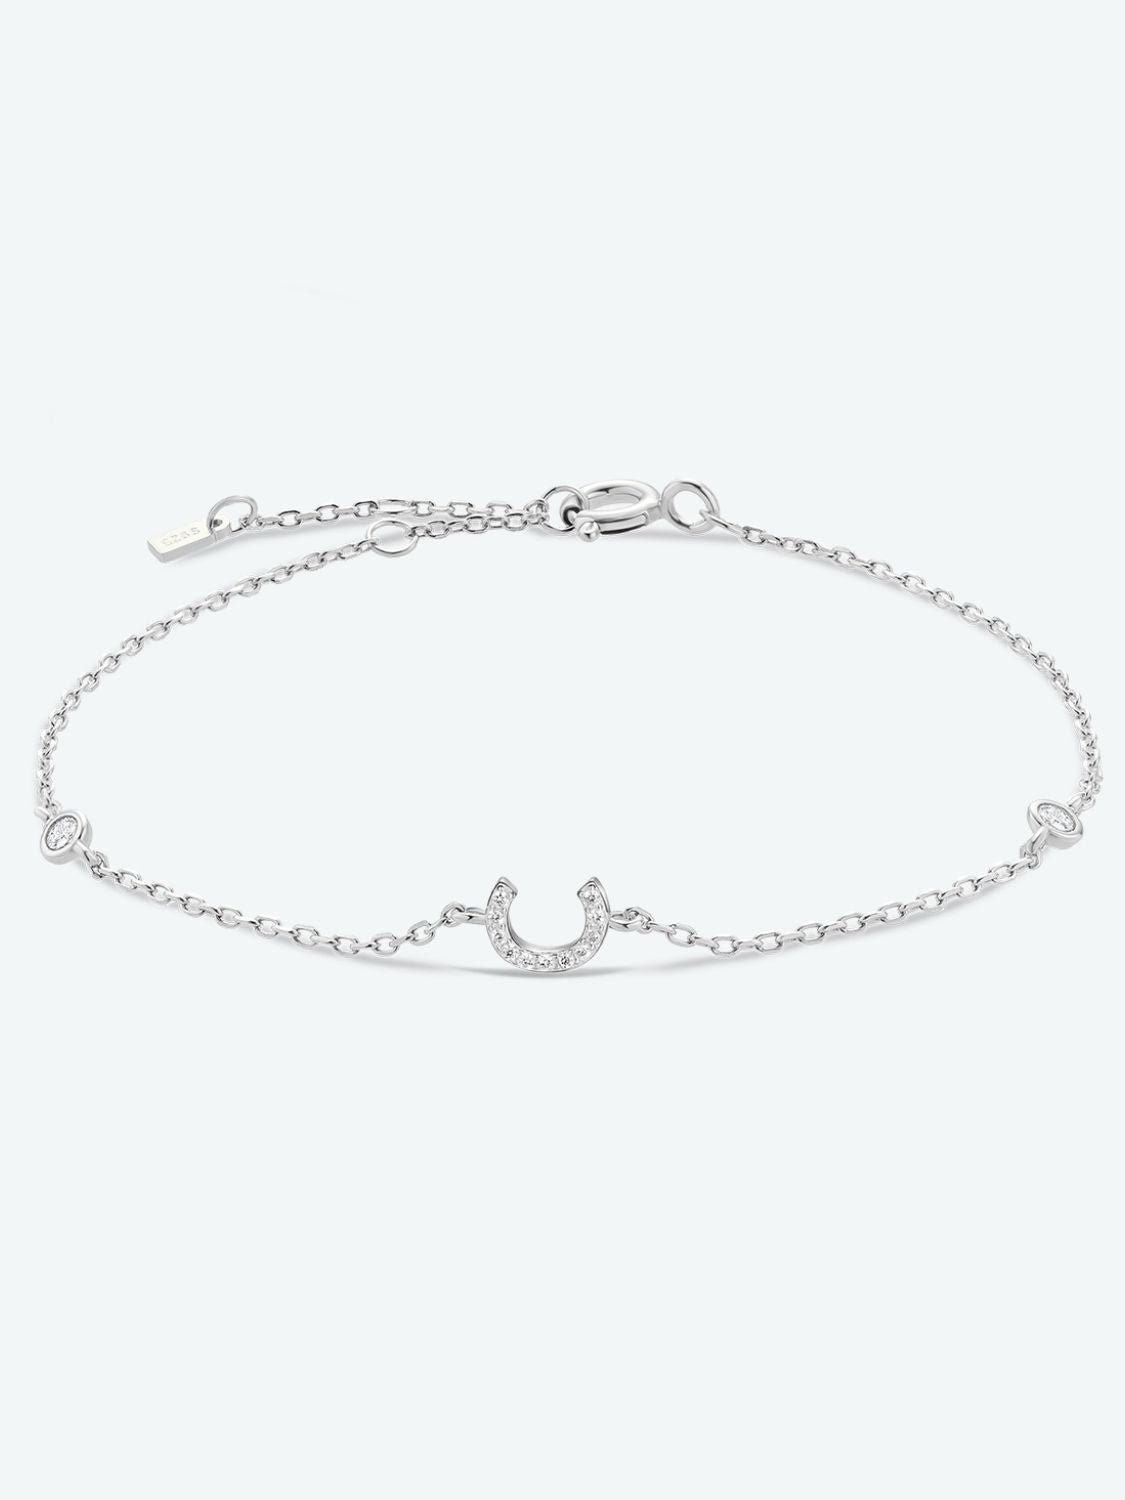 A To F Zircon 925 Sterling Silver Bracelet - C-Silver / One Size - Women’s Jewelry - Bracelets - 16 - 2024